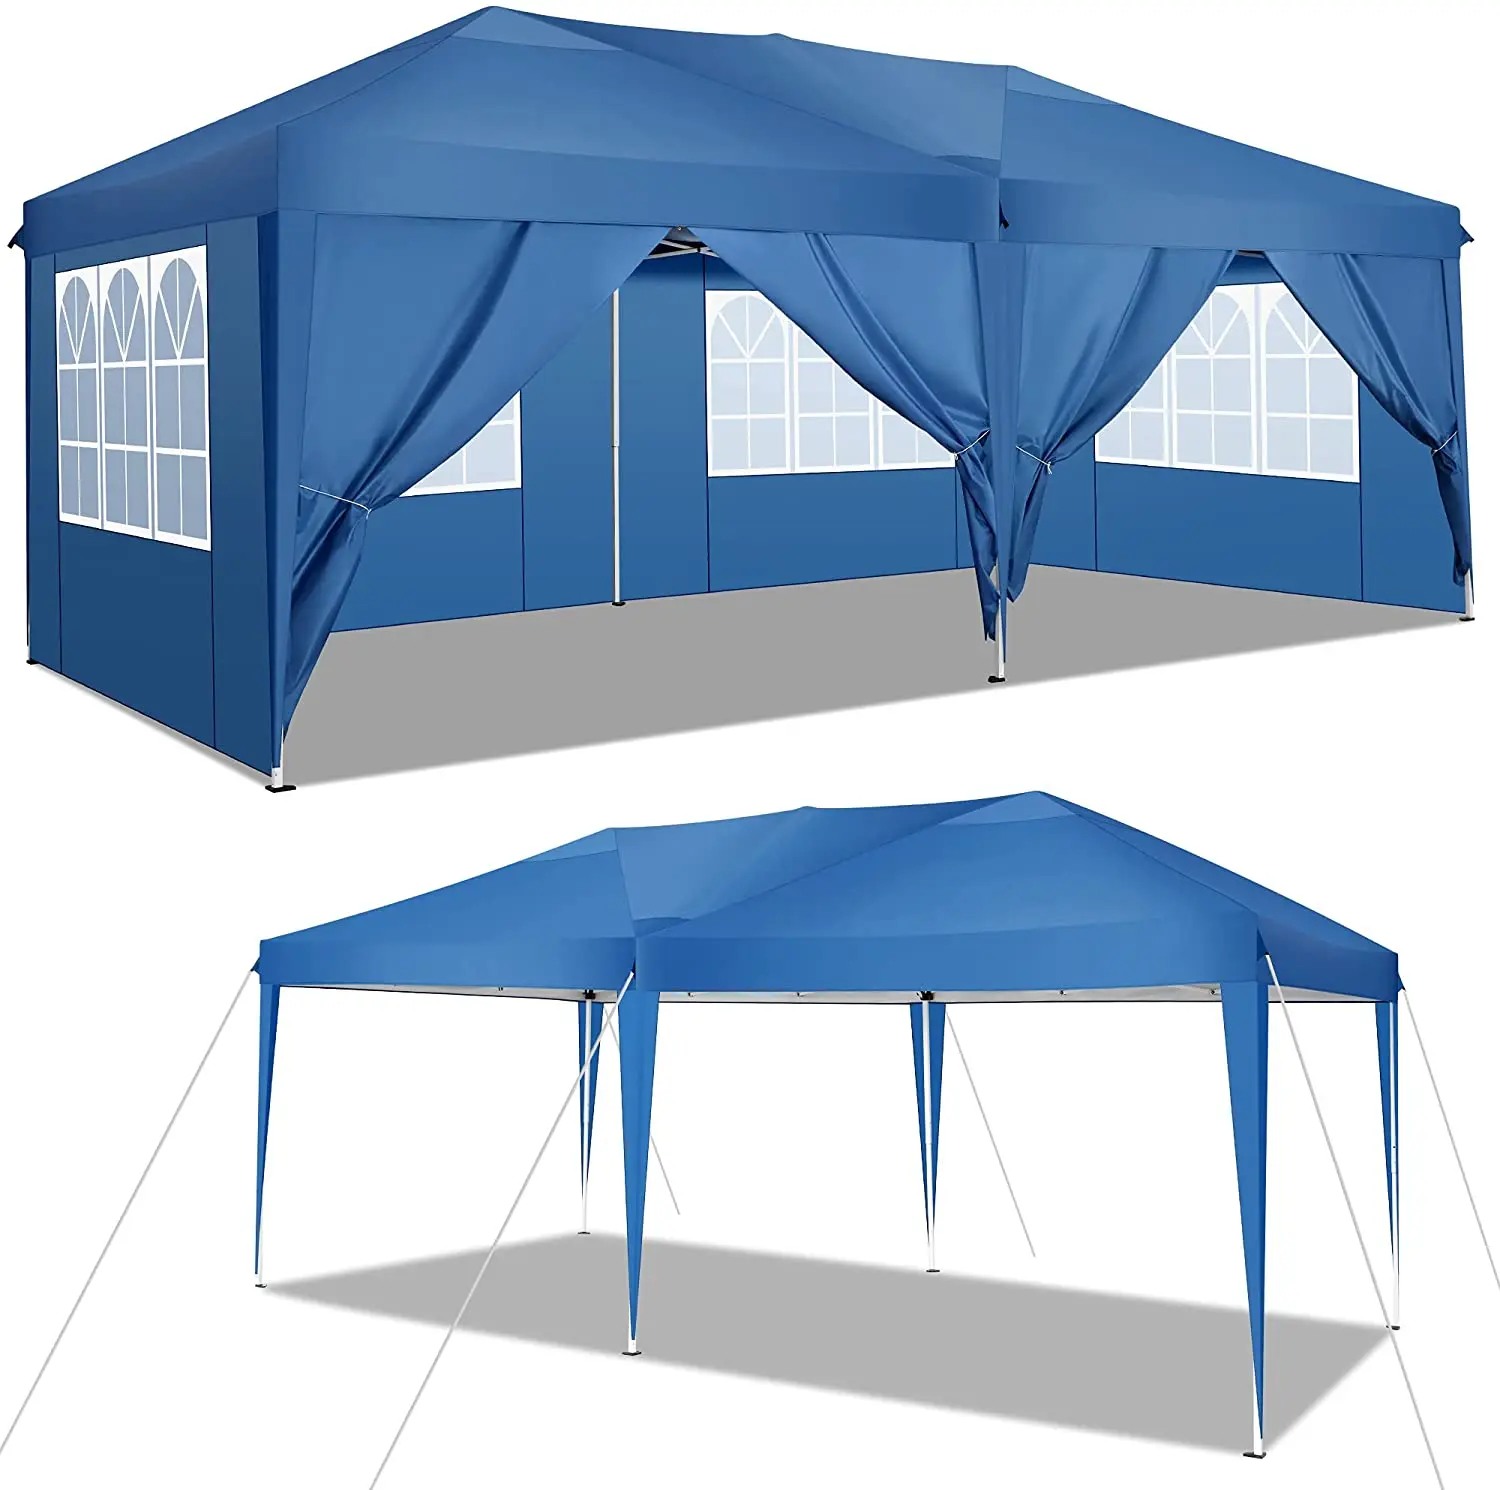 Gazebo 3x6m Folding Gazebo Garden Tent PVC 100% Waterproof 2 Side Panels White 